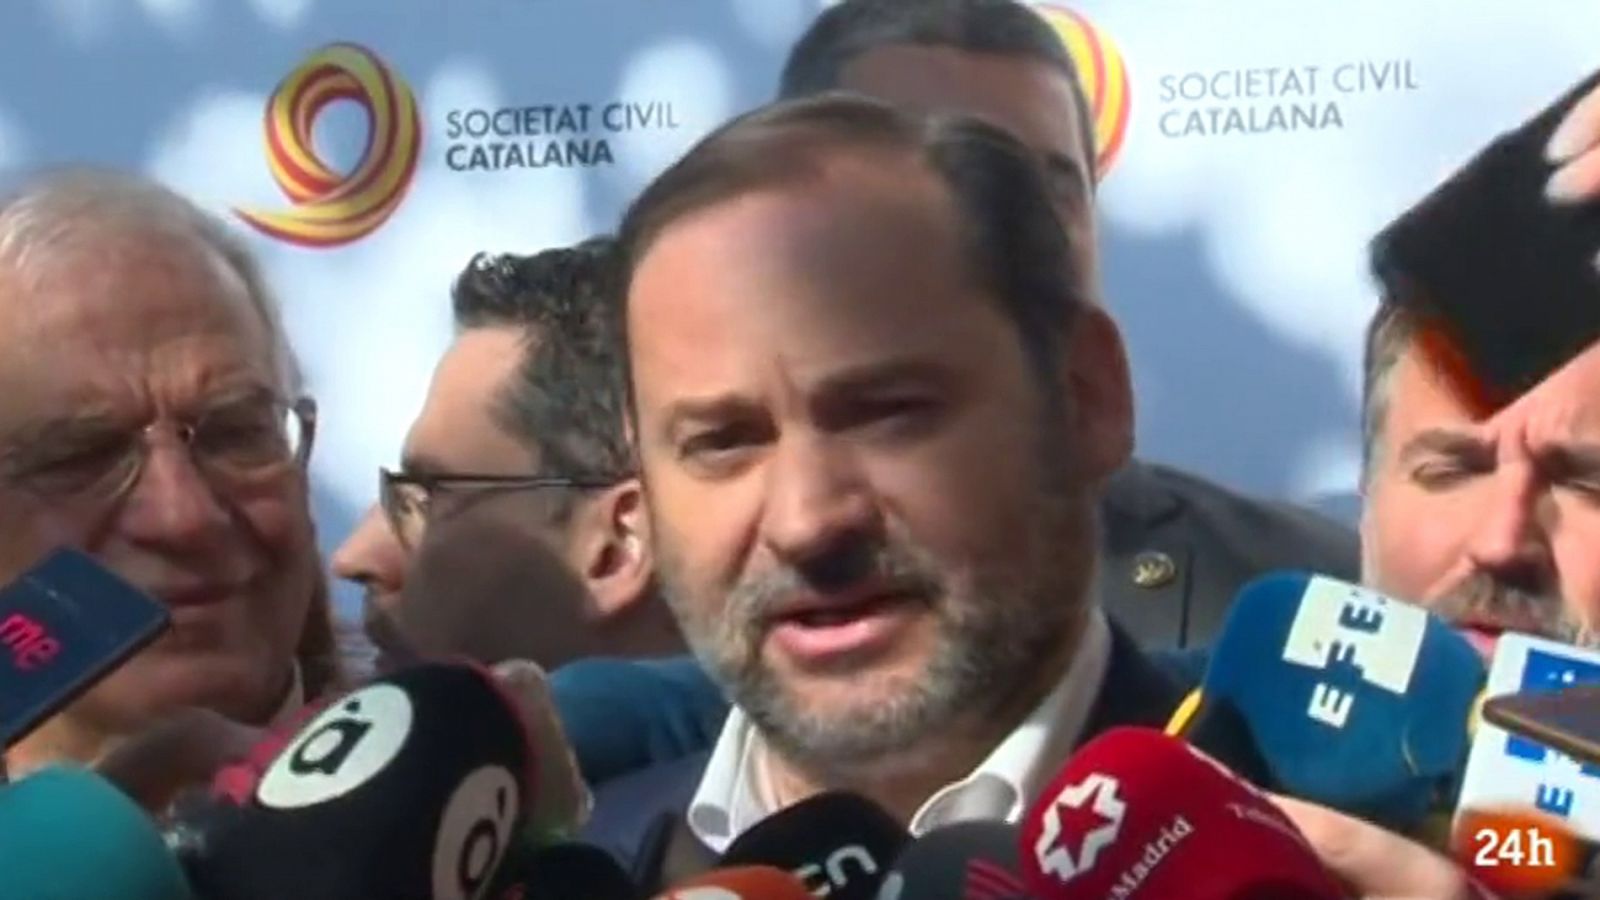 Cataluña: Ábalos reivindica "el proyecto de España y de la Constitución, que nada tiene que ver con la exclusión" - RTVE.es